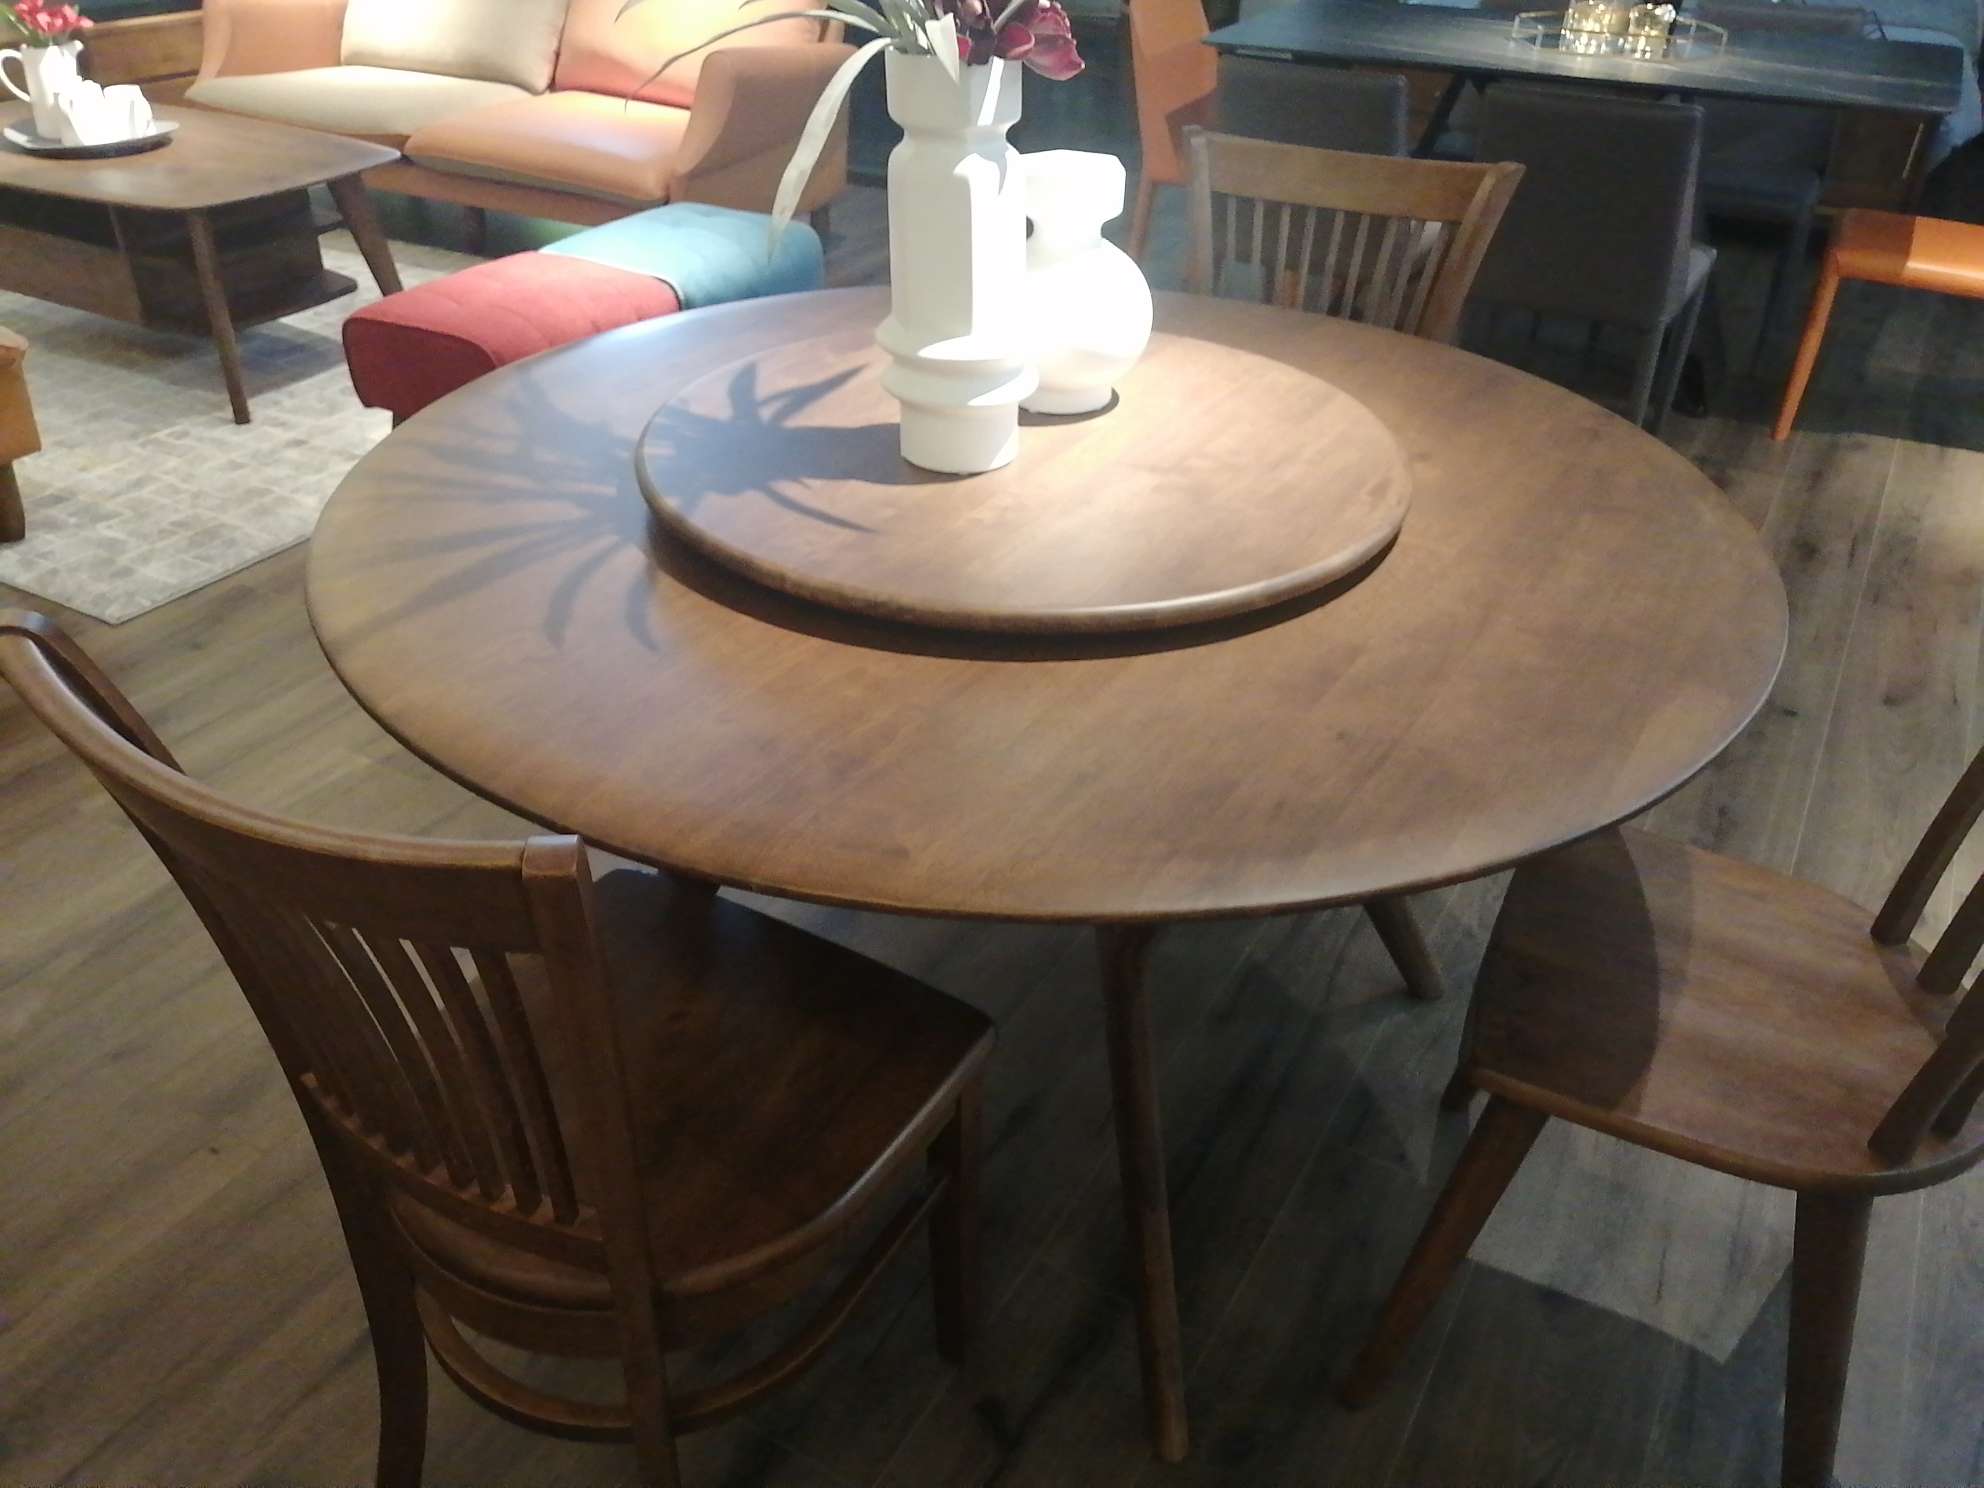 科美滋马来西亚原装进口圆餐桌1.35米加两条凳子详情图4